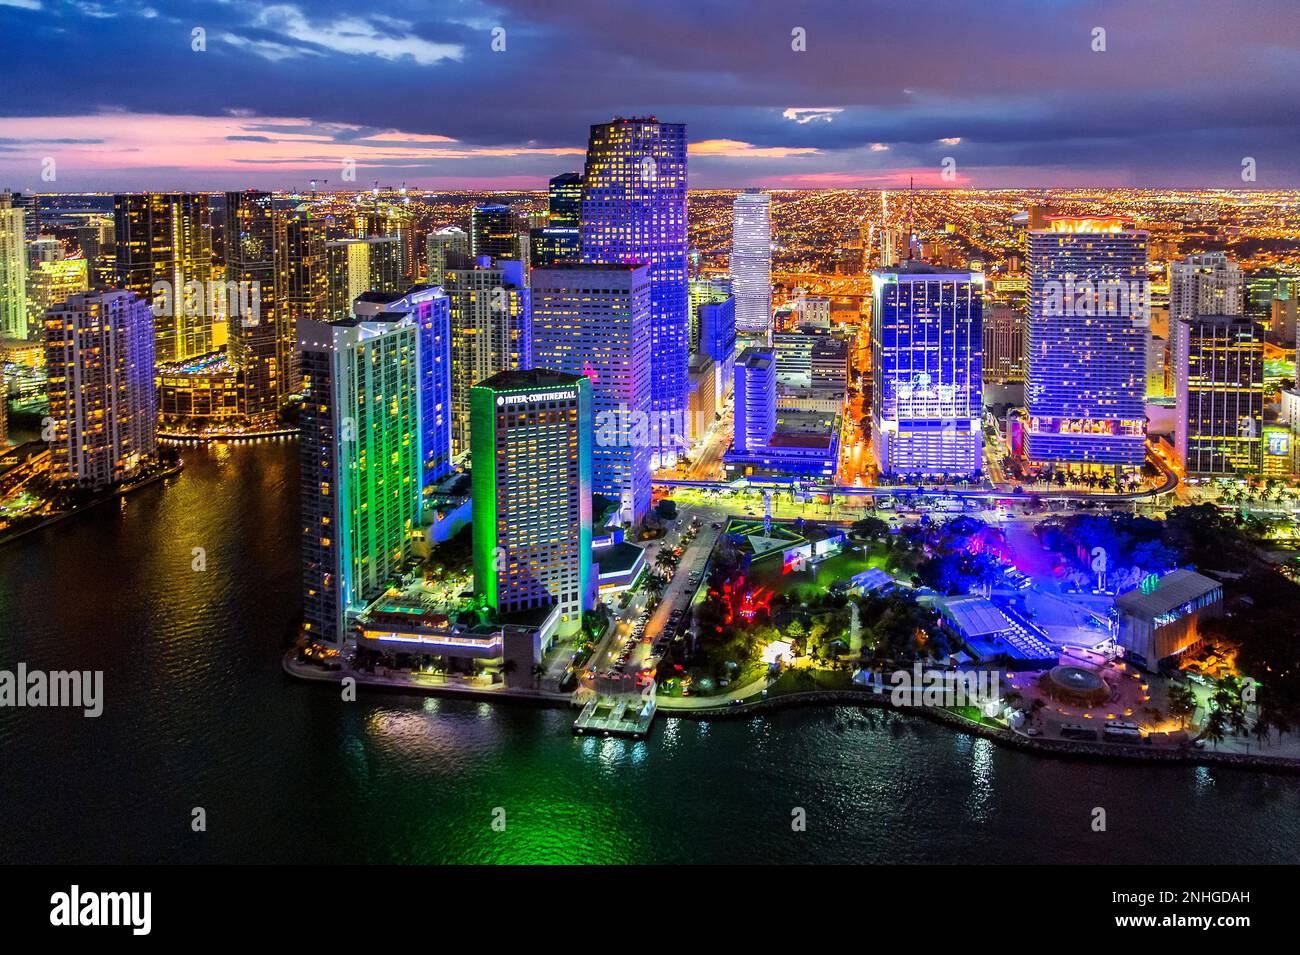 Miami Downtown et Bayside célébrant le festival Ultra Music, Neon Lights Aerial View, Miami, Floride du Sud, Dade, Floride, États-Unis Banque D'Images